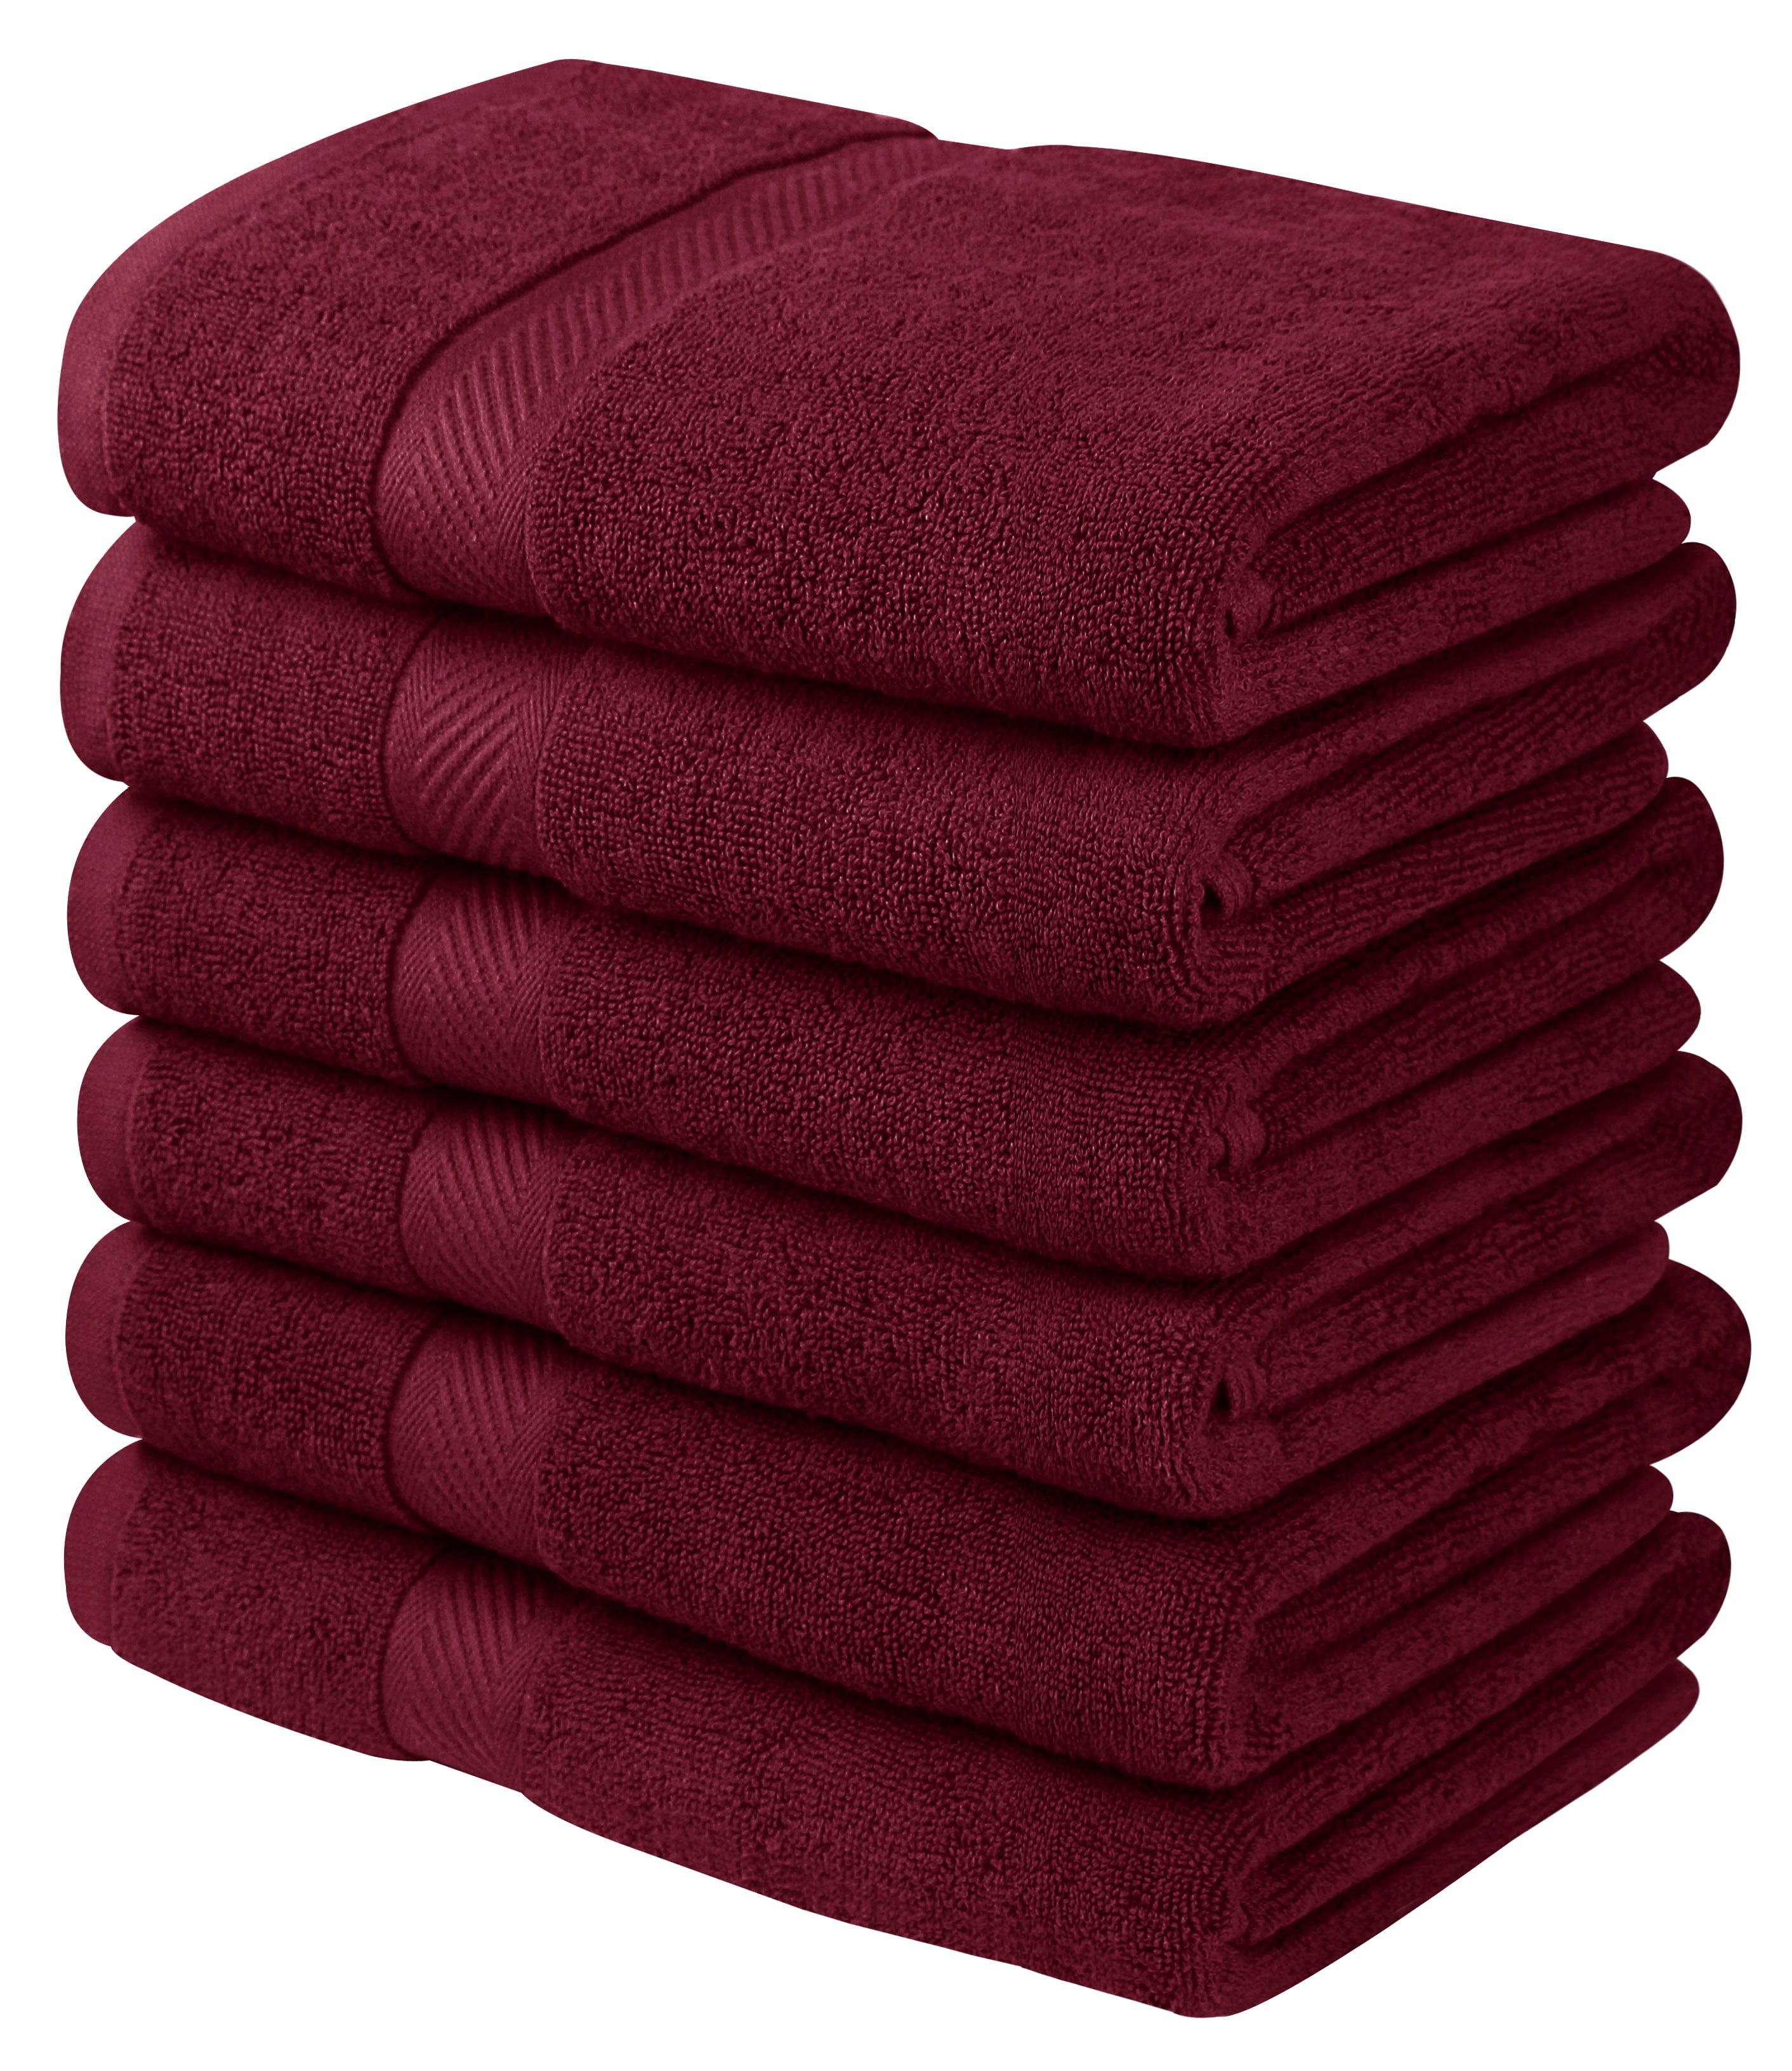 Lane Linen 24 PC Towels for Bathroom - 100% Cotton Bath Towel Sets, Luxury Bath Towels, 2 Bath Sheets, 4 Bath Towels, 6 Hand Towels for Bathroom, 8